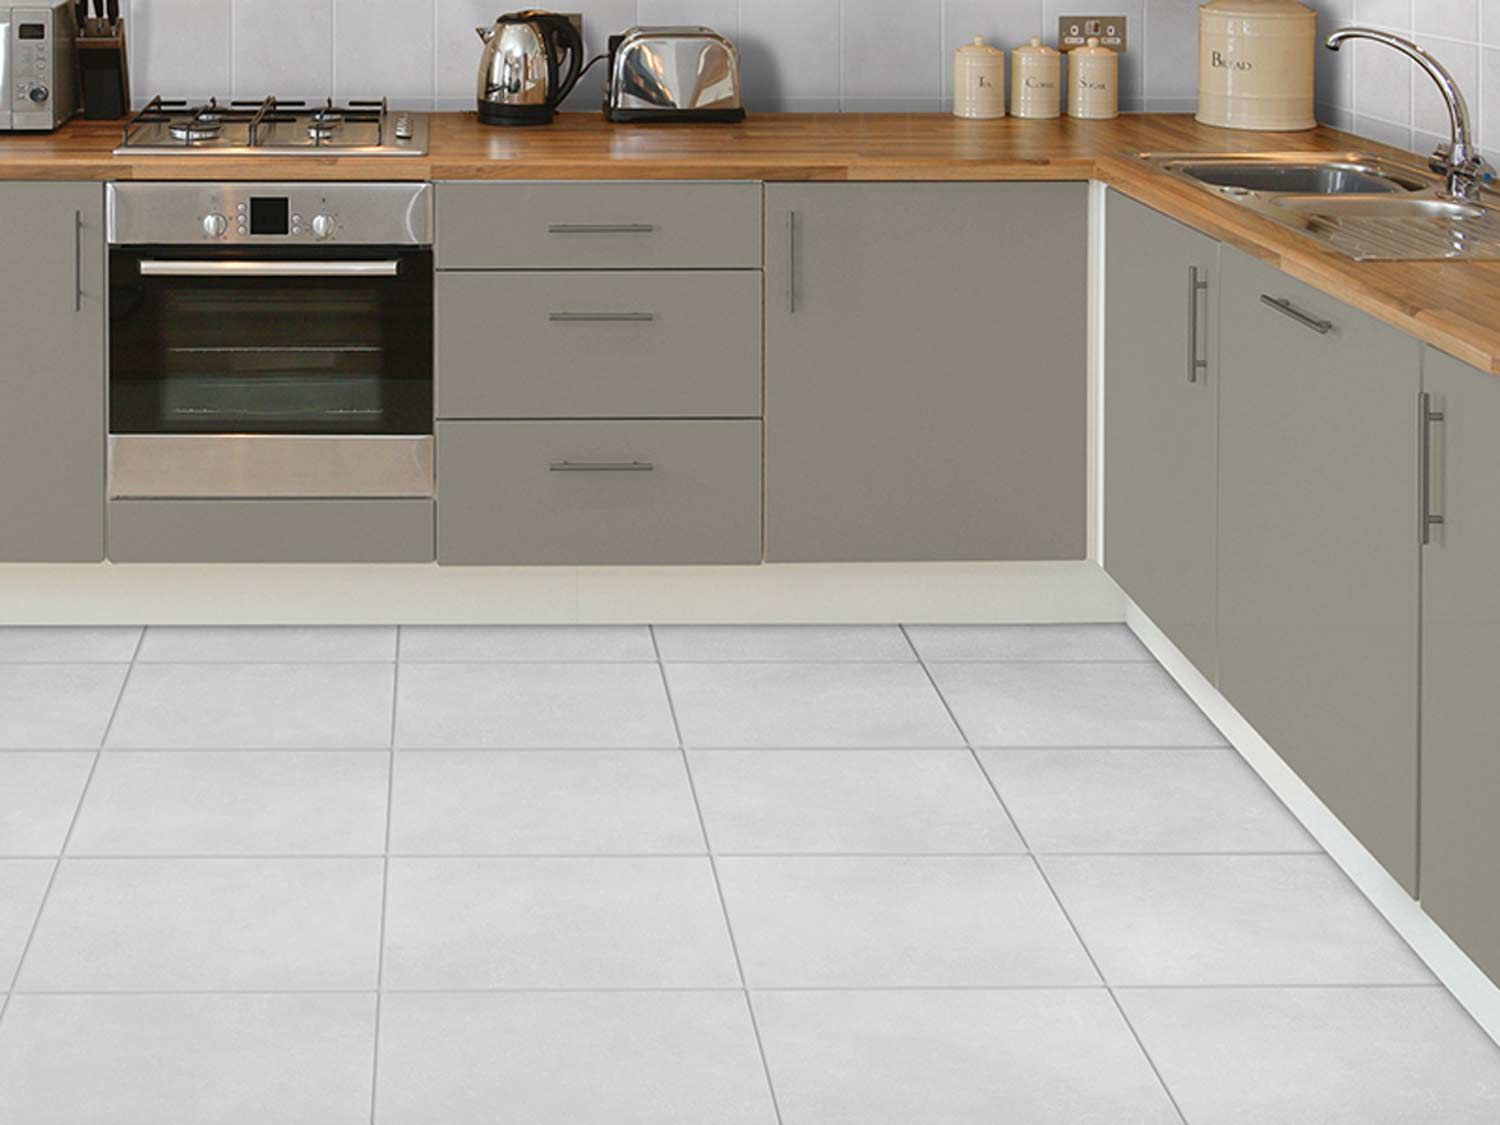 Kyra Grey Ecotec Matt Ceramic Floor, Gray Kitchen Floor Tile